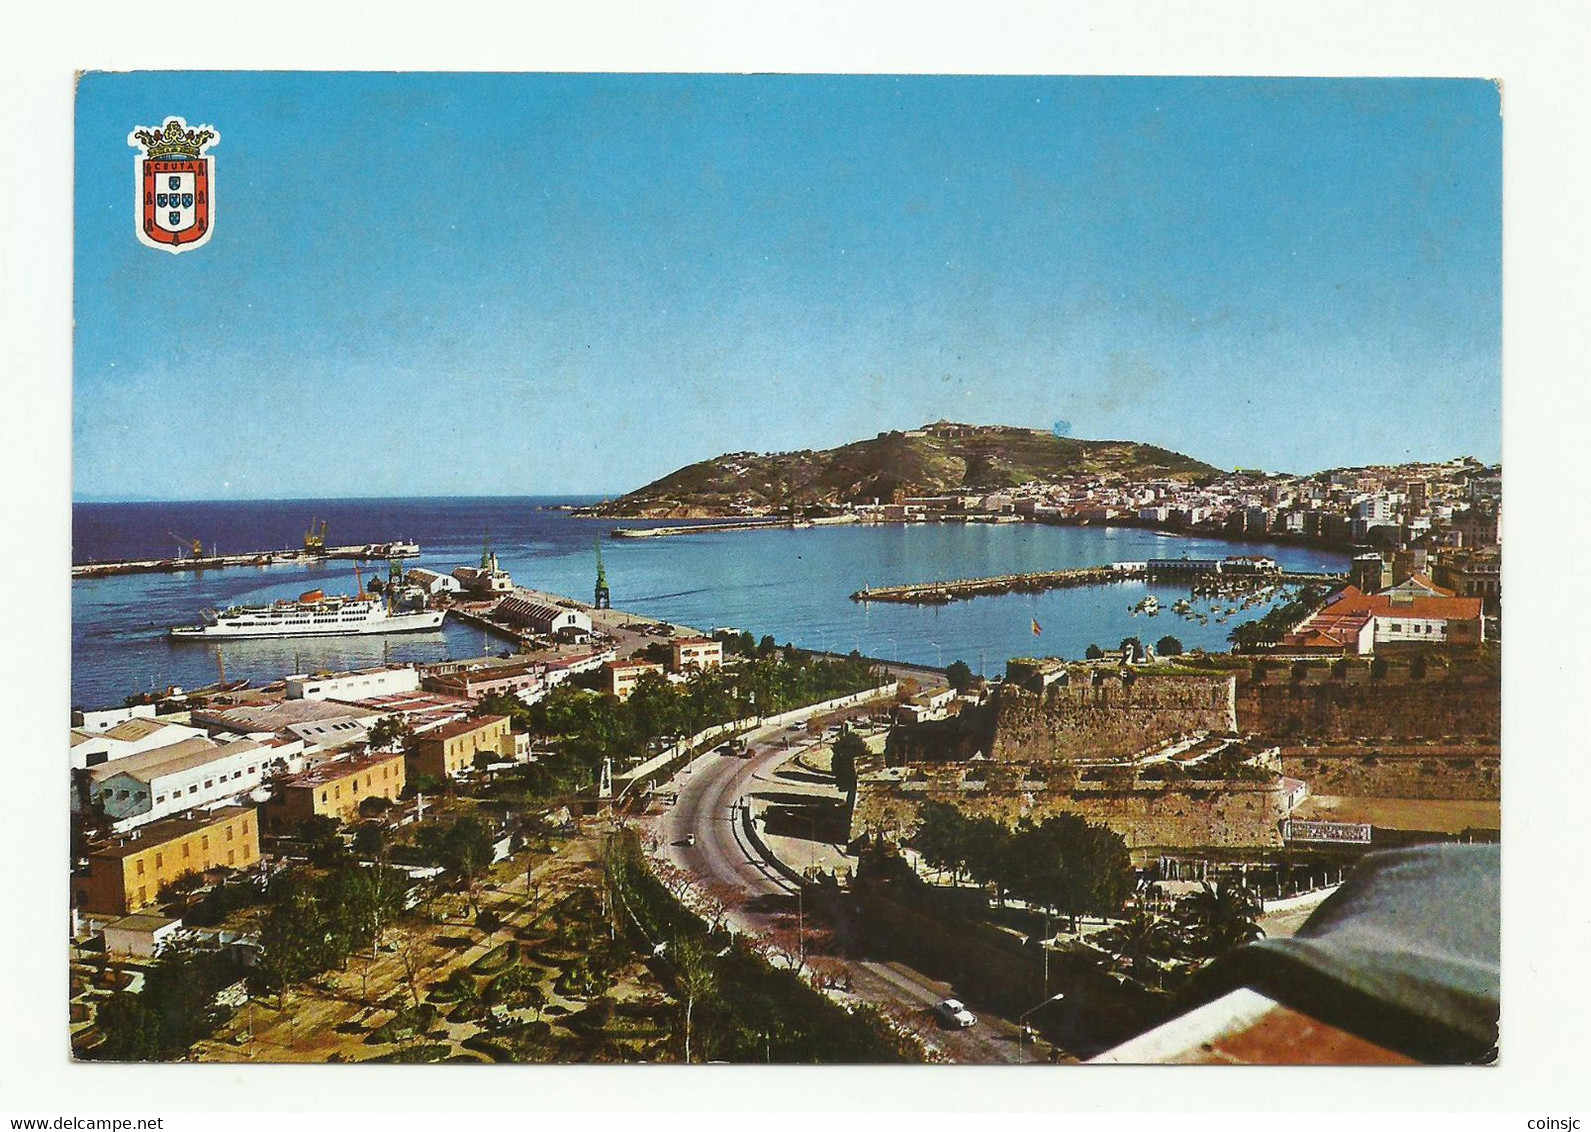 POSTCARD - SPAIN - CEUTA - Ceuta